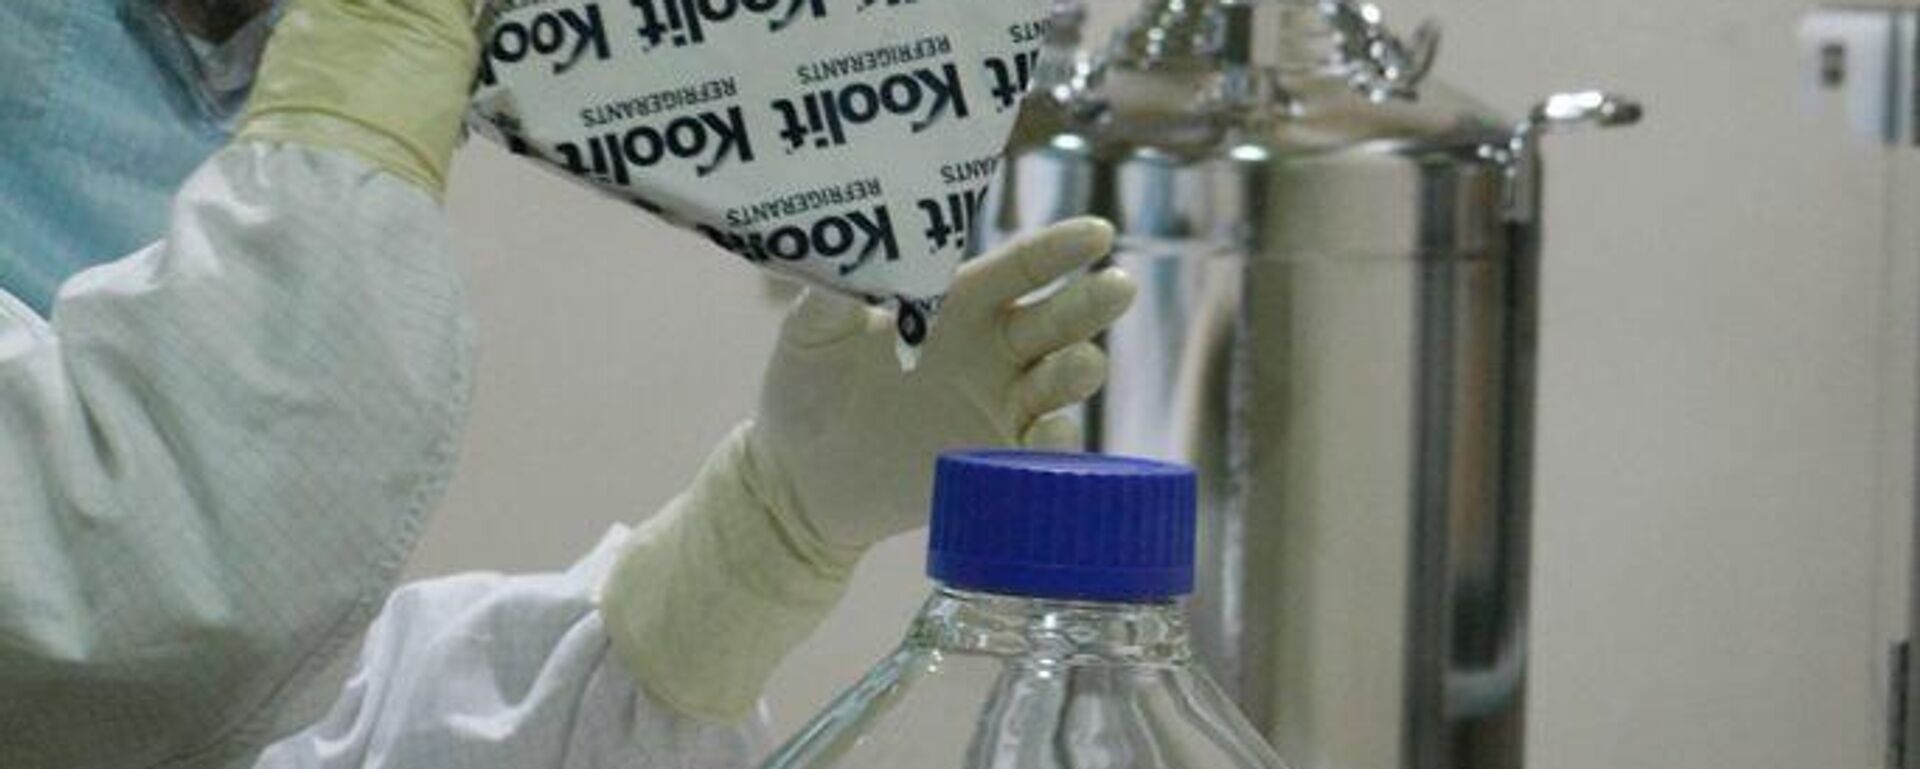 Las autoridades sanitarias del Gobierno de México, a través del estatal Laboratorios de Biológicos y Reactivos de México (Birmex), comenzaron la prueba piloto de envasado de la vacuna rusa Sputnik V contra el nuevo coronavirus. - Sputnik Mundo, 1920, 04.08.2022